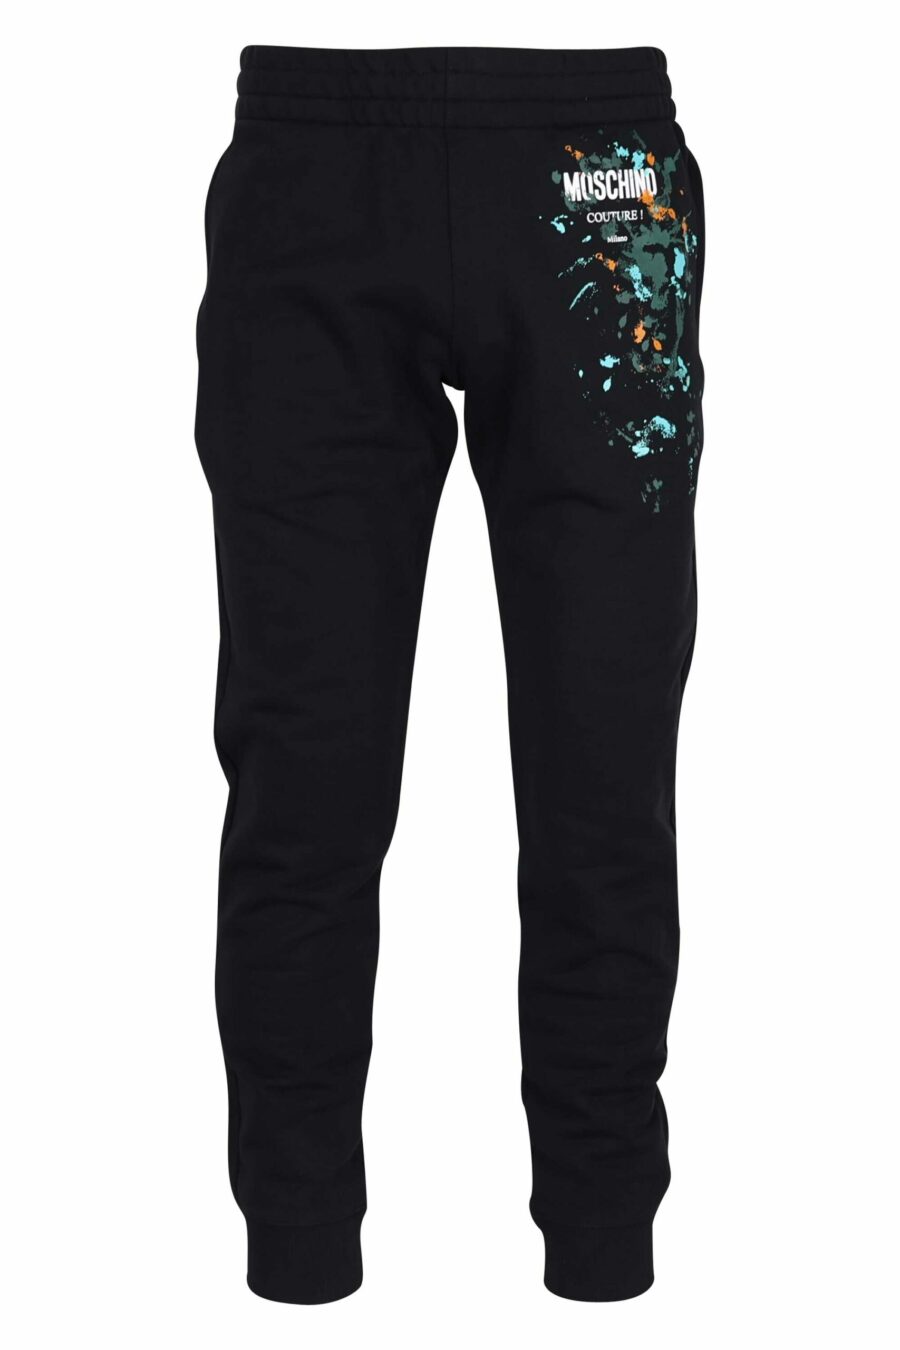 Pantalón de chándal negro de algodón orgánico y logo "splash" multicolor - 667113349237 scaled